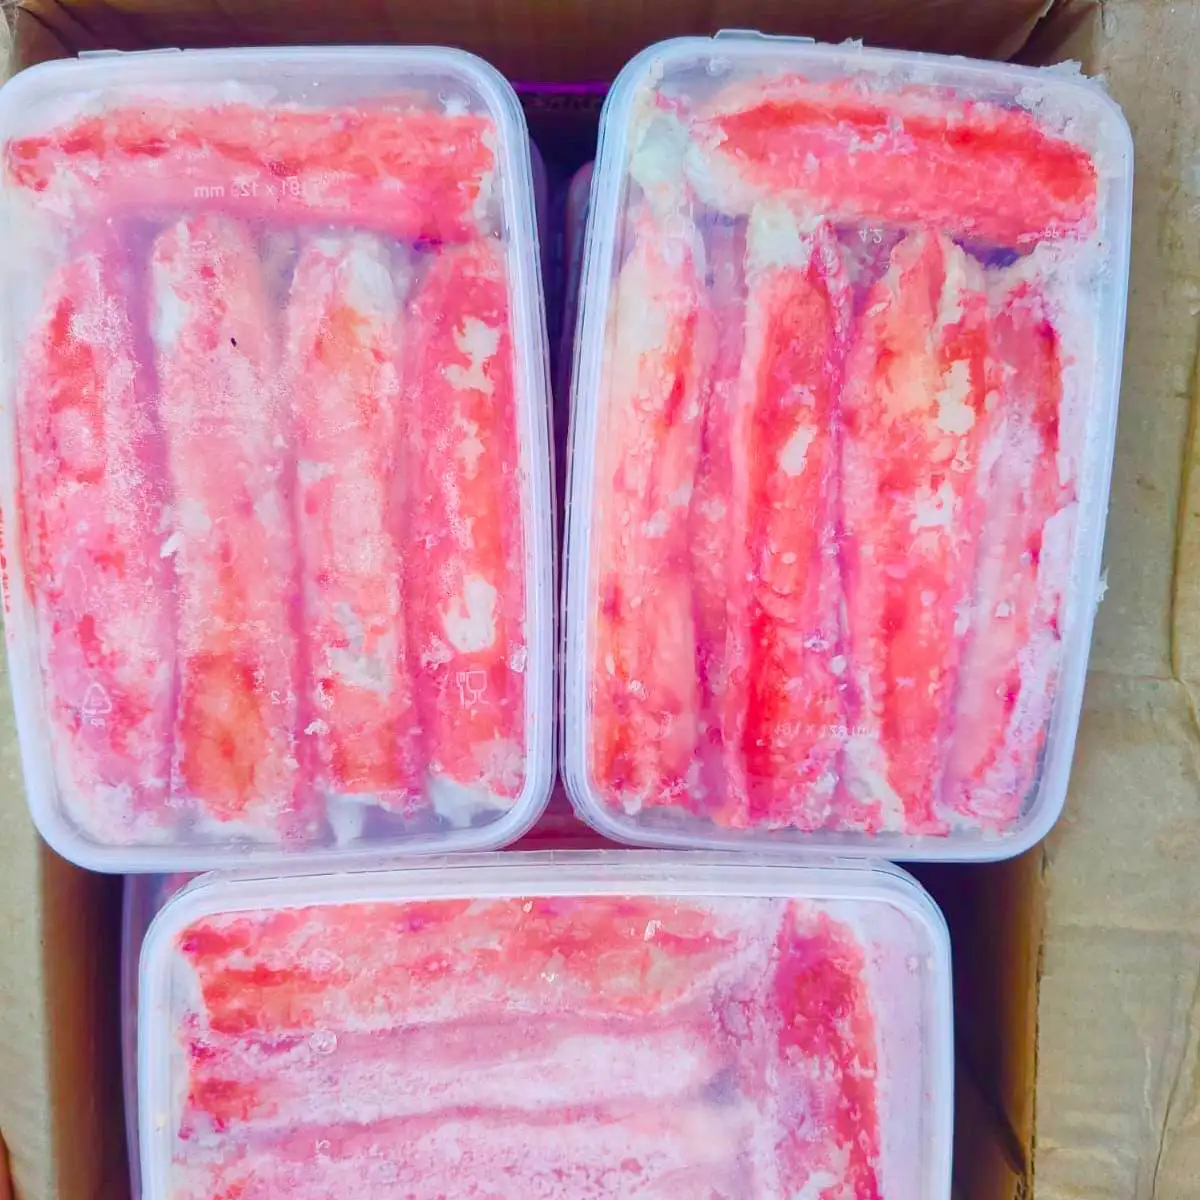 Первая фаланга Камчатского краба Сахалин / очищенная / крупная 10-14 см / мясо краба сухой заморозки 1 кг